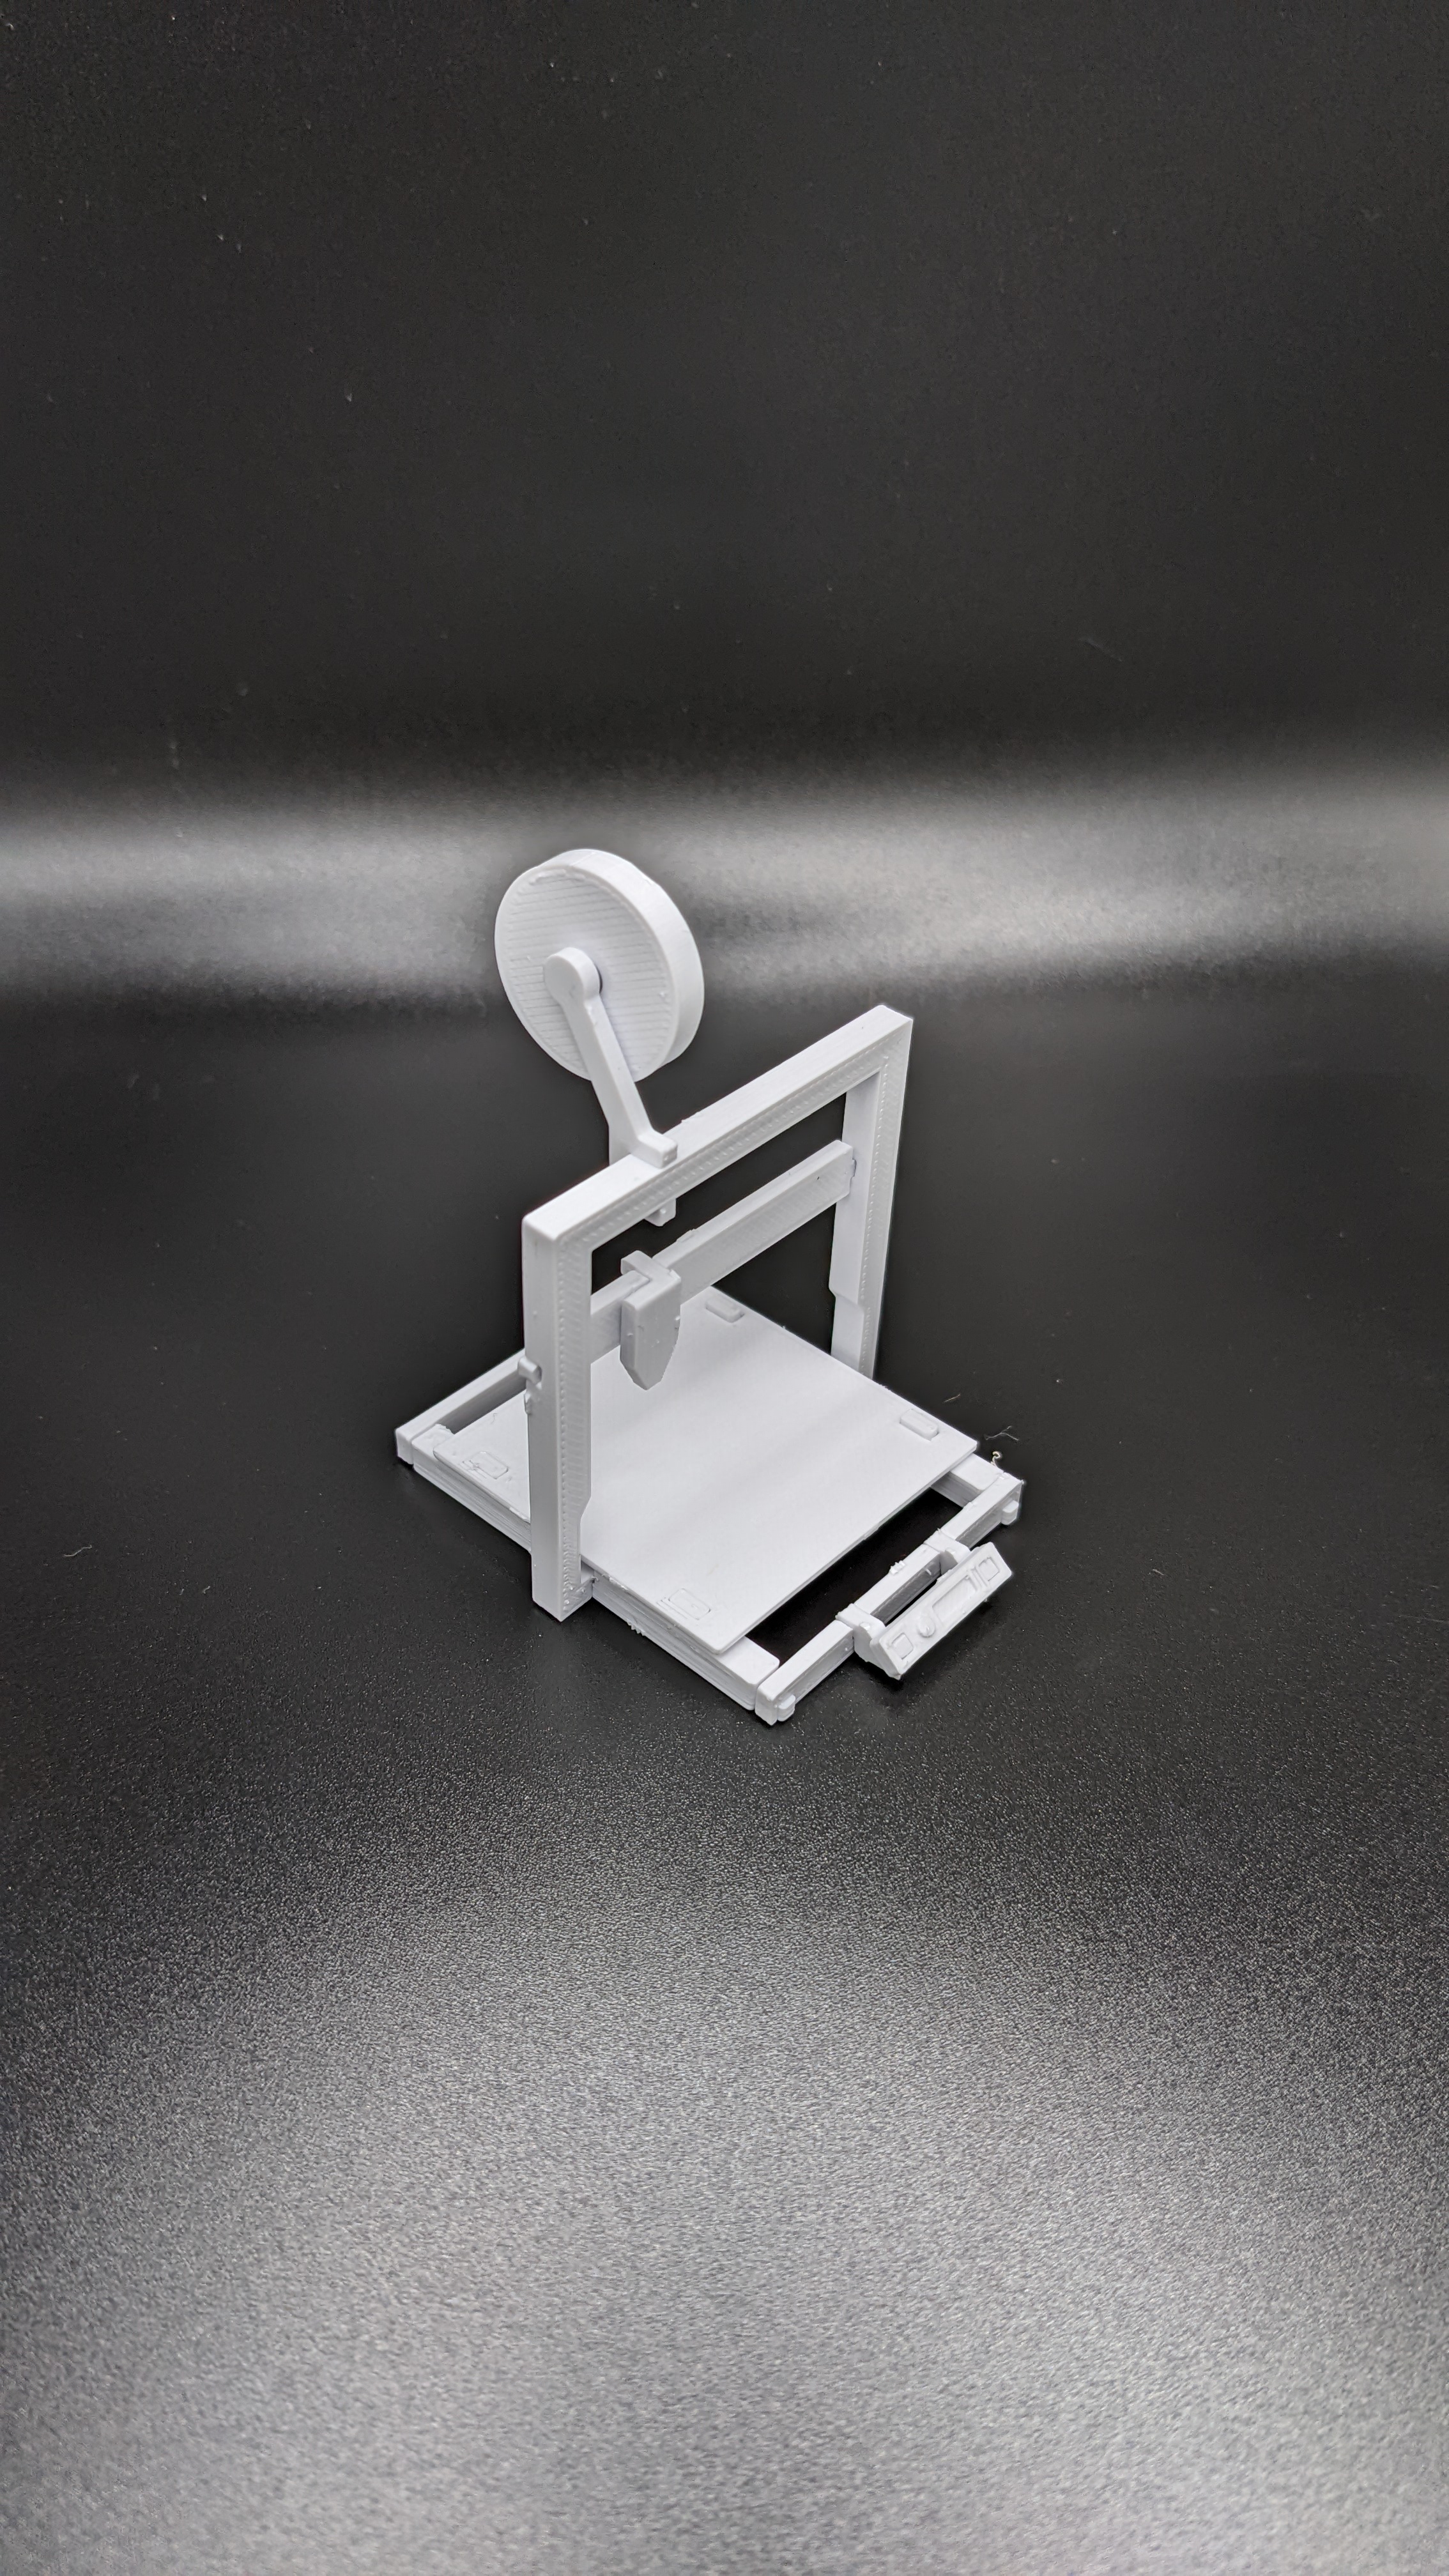 3D Printer kit card model